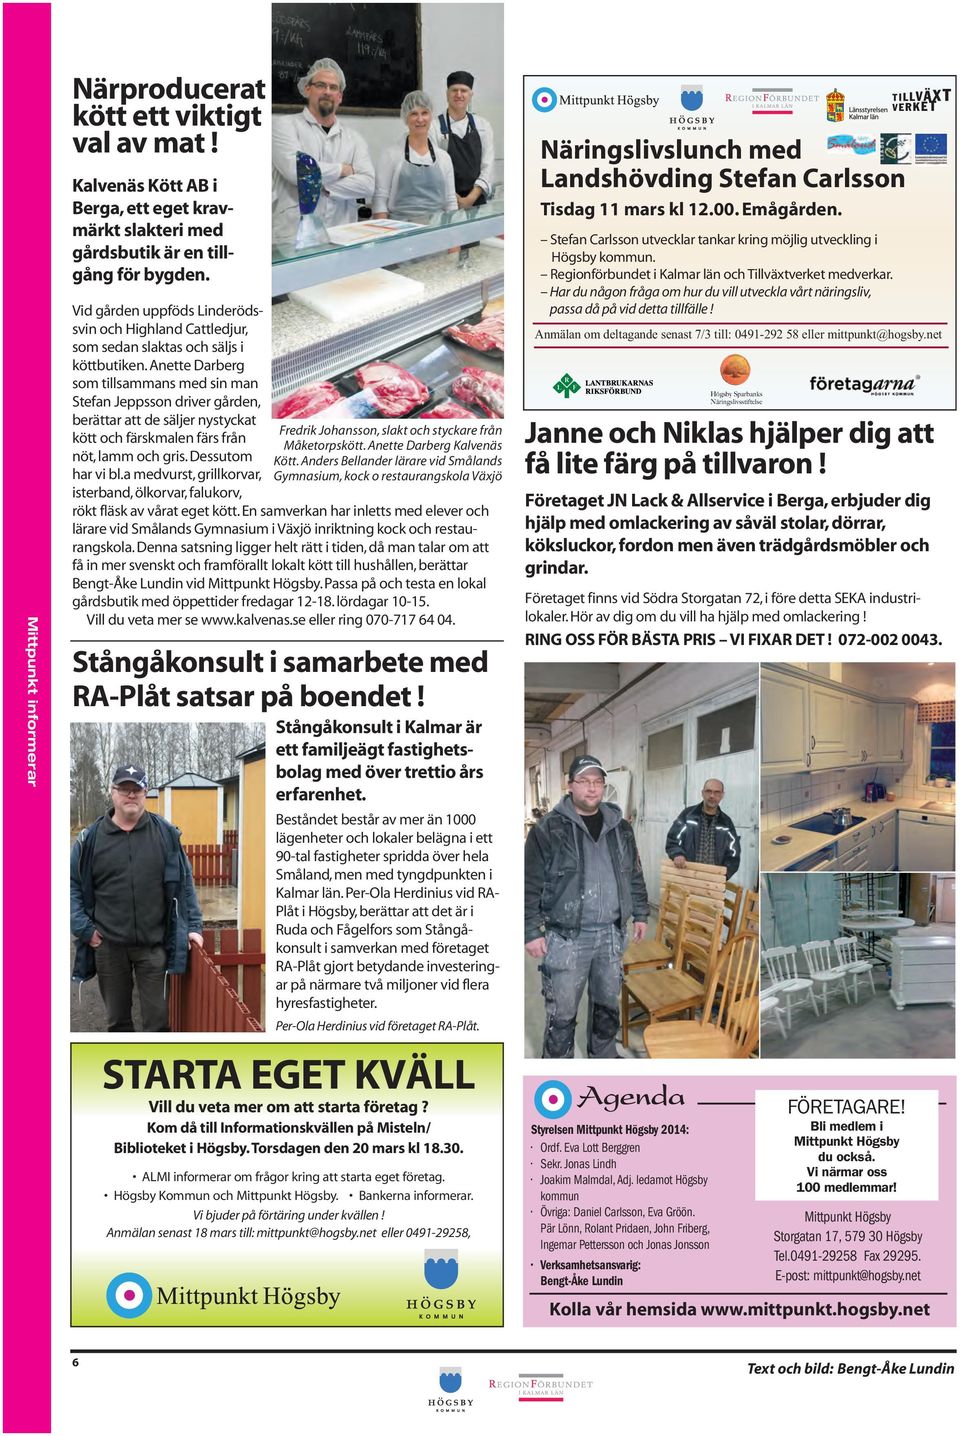 Anette Darberg som tillsammans med sin man Stefan Jeppsson driver gården, berättar att de säljer nystyckat Fredrik Johansson, slakt och styckare från kött och färskmalen färs från Måketorpskött.